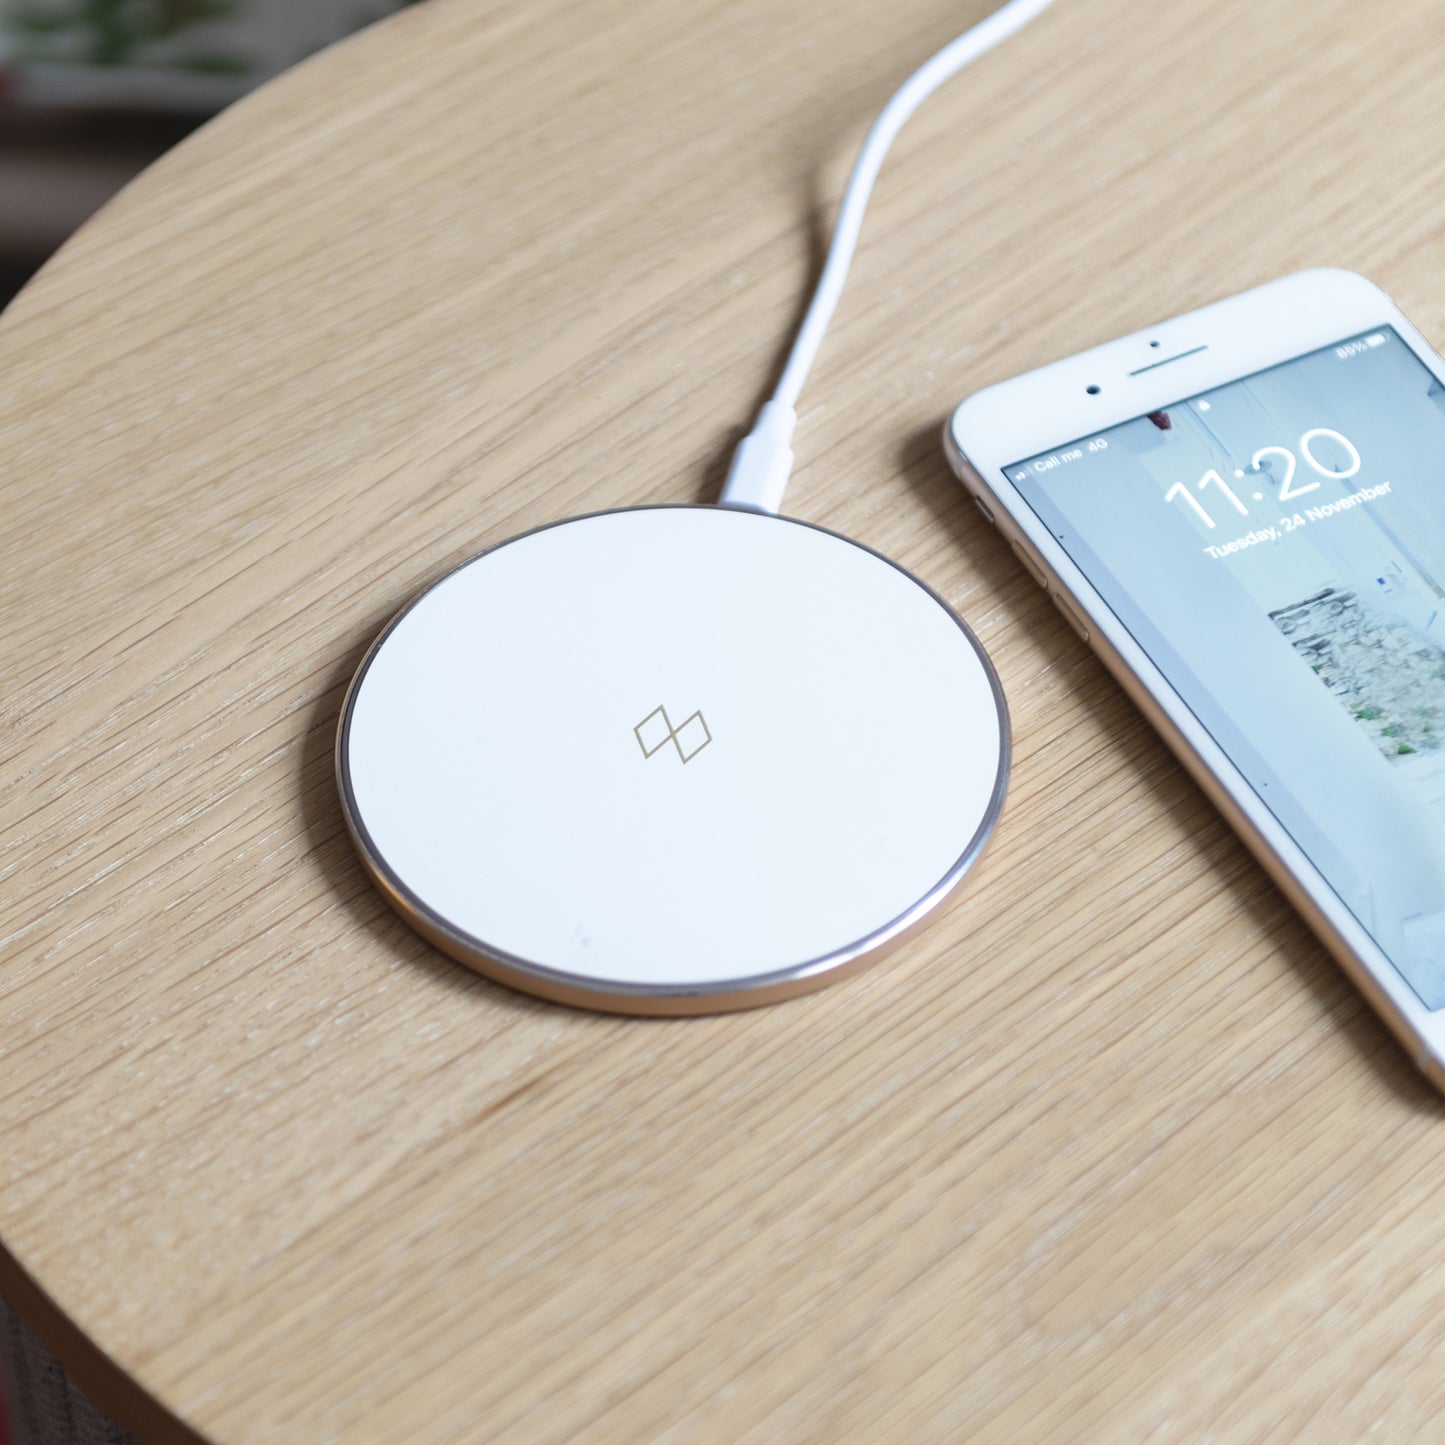 Snygg Qi-laddare för trådlösa enheter såsom en smartphone i vit och roséguld